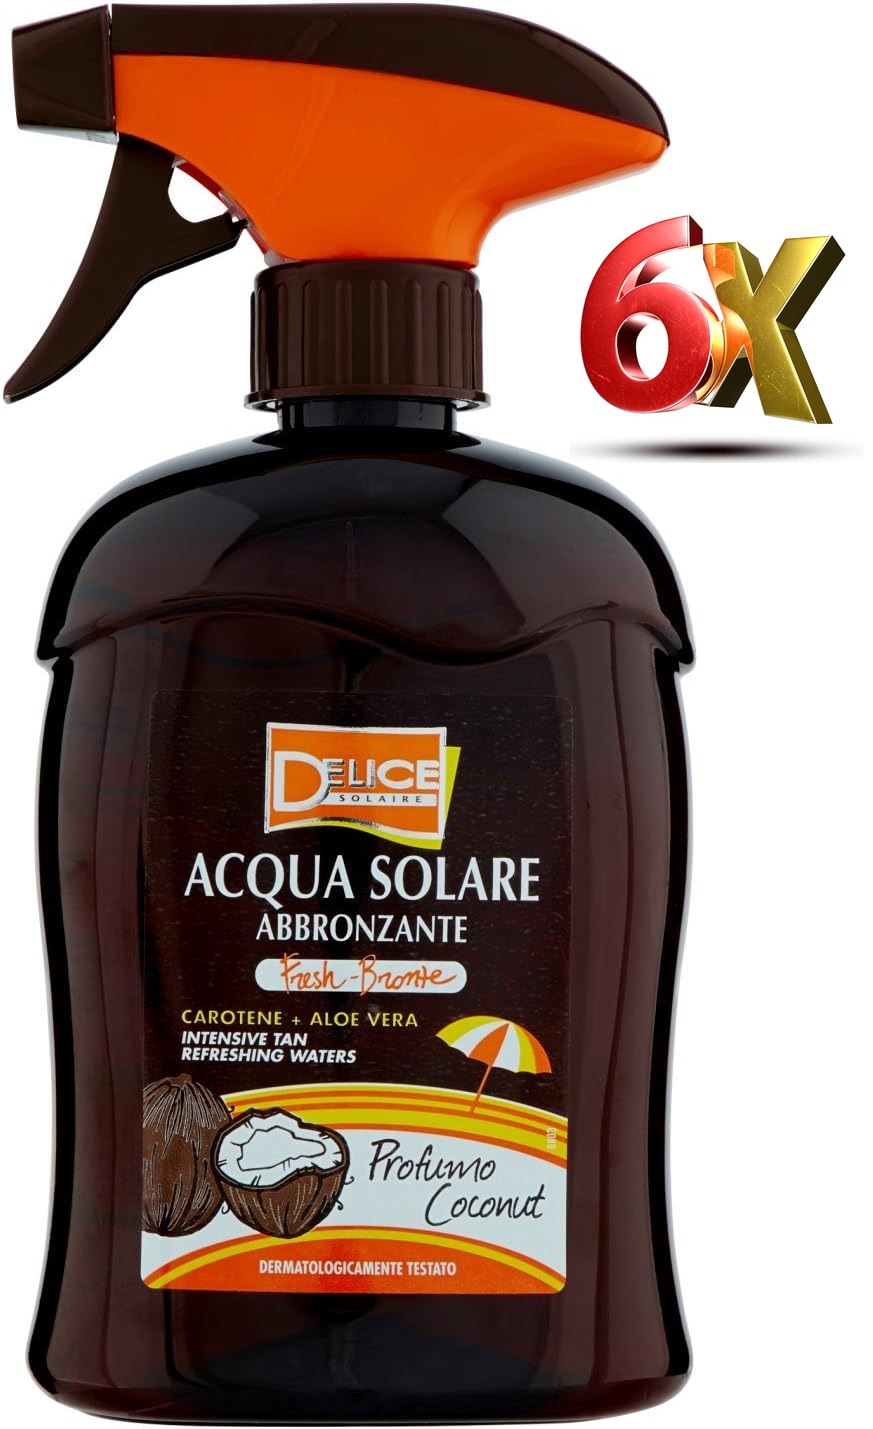 6x Delice Solaire Acqua Solare Abbronzante Carotene + Aloe Vera da 500ml .